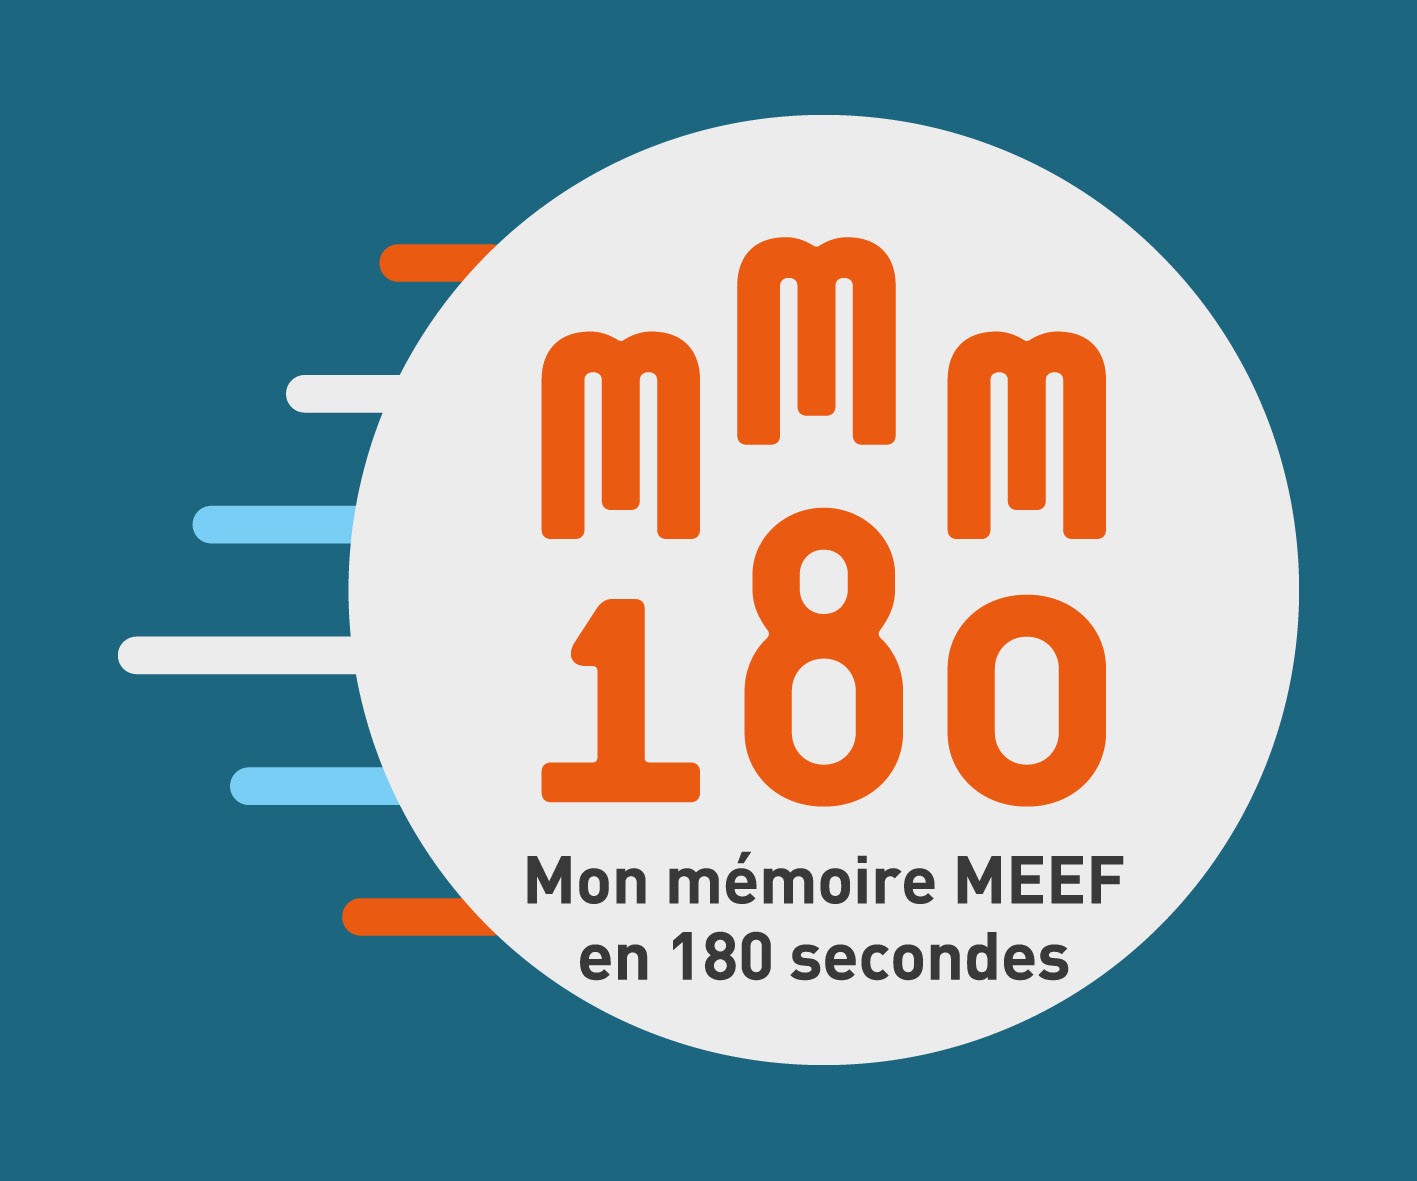 Mon mémoire MEEF en 180 secondes 2018 : grande finale nationale le 28 juin à Marseille